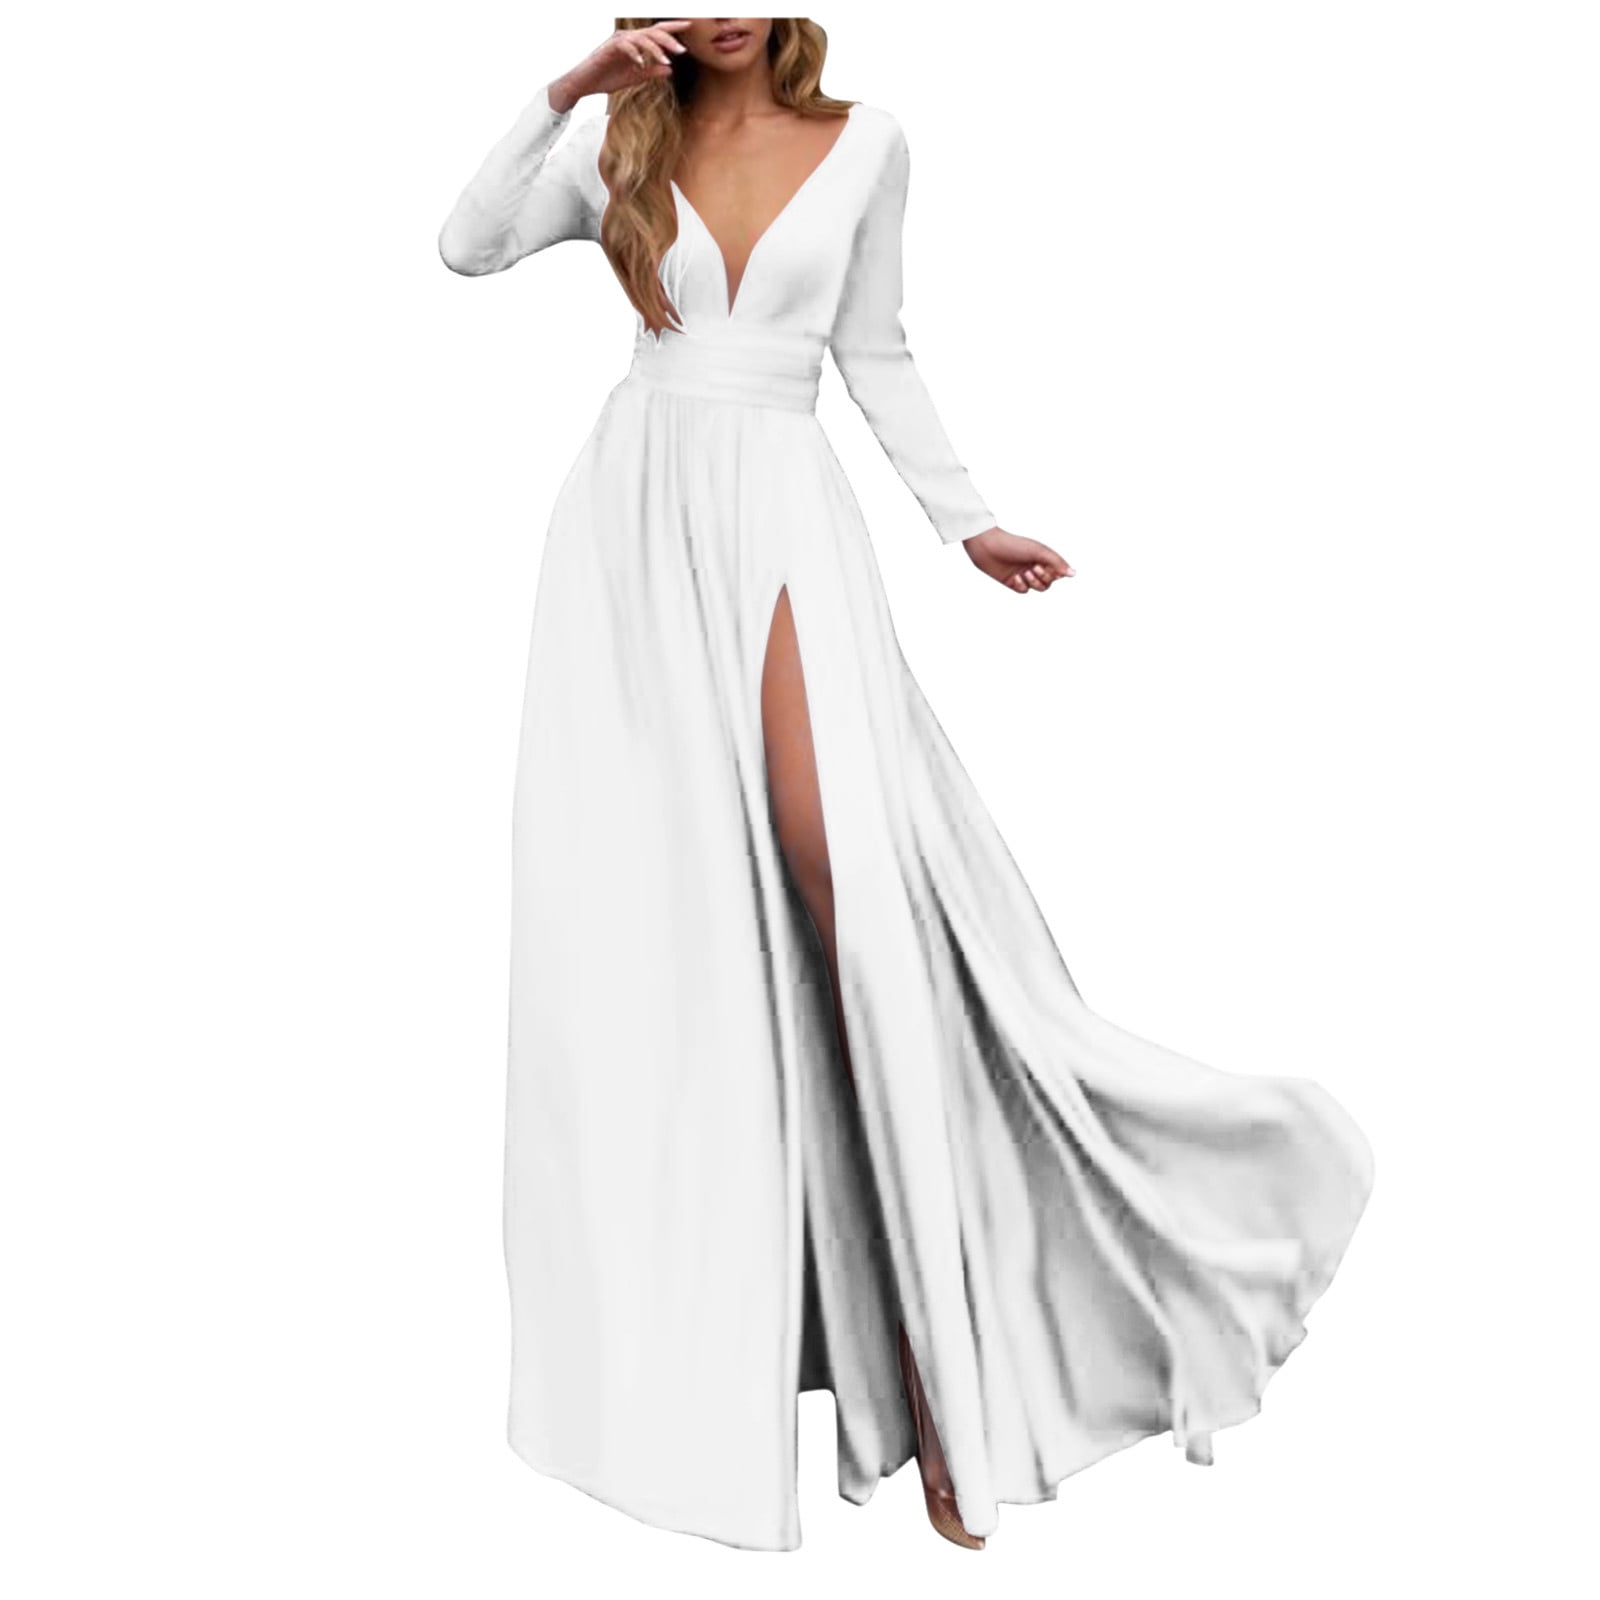 white formal dresses for women